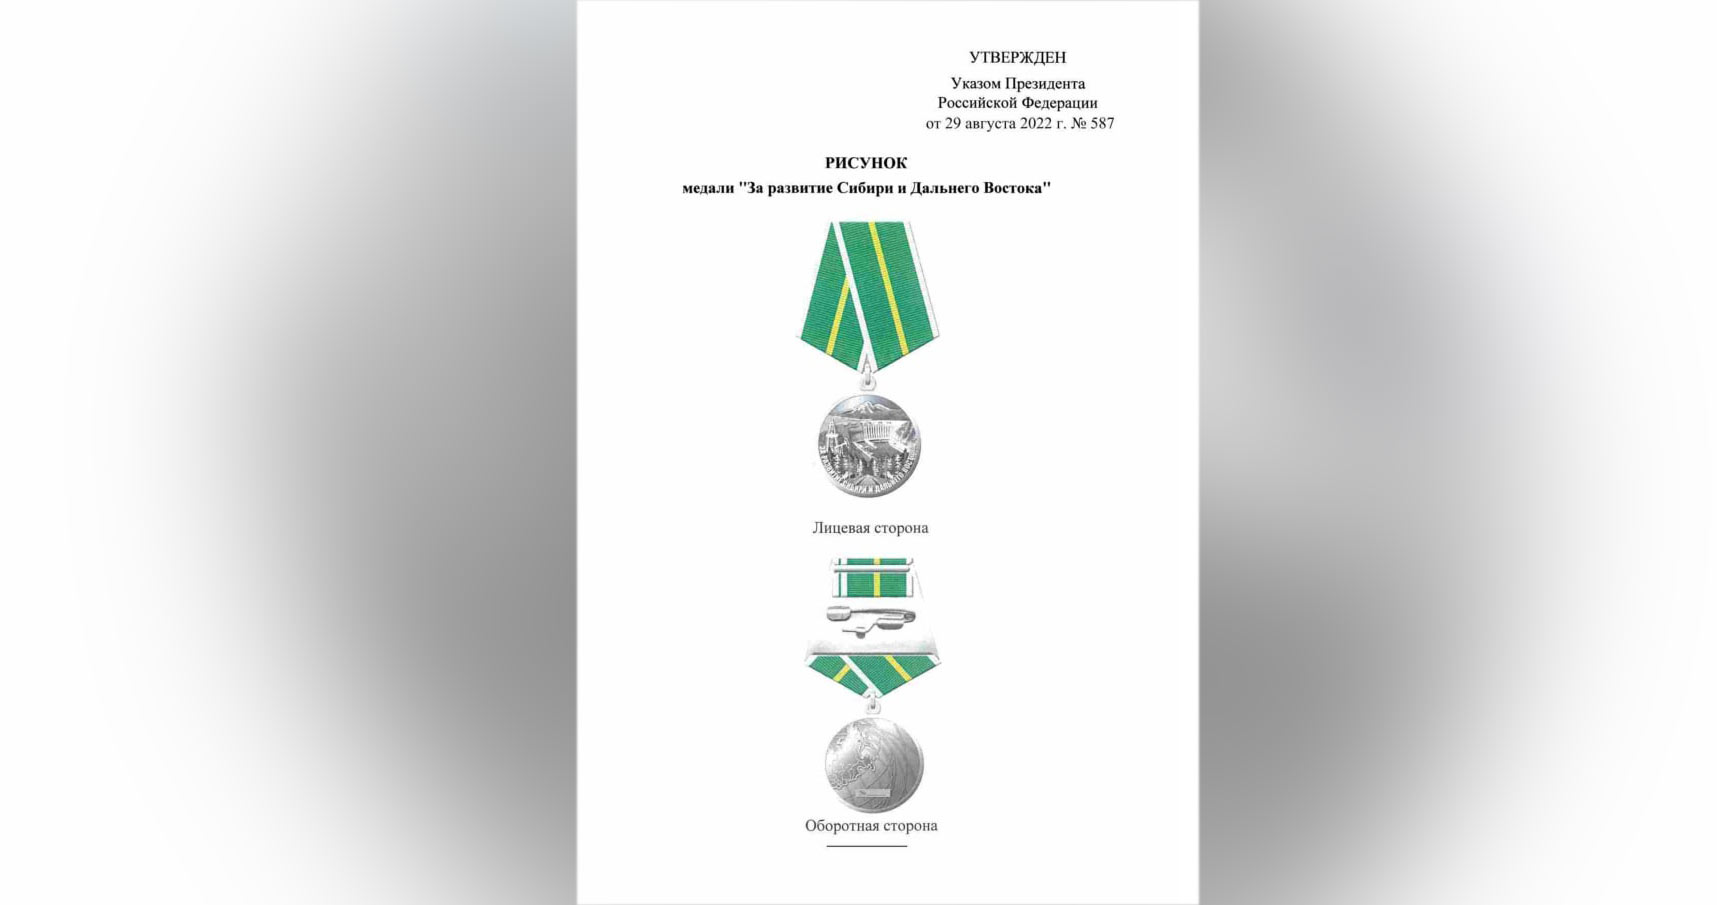 Медаль "За развитие Сибири и Дальнего Востока". Фото © Официальный интернет-портал правовой информации